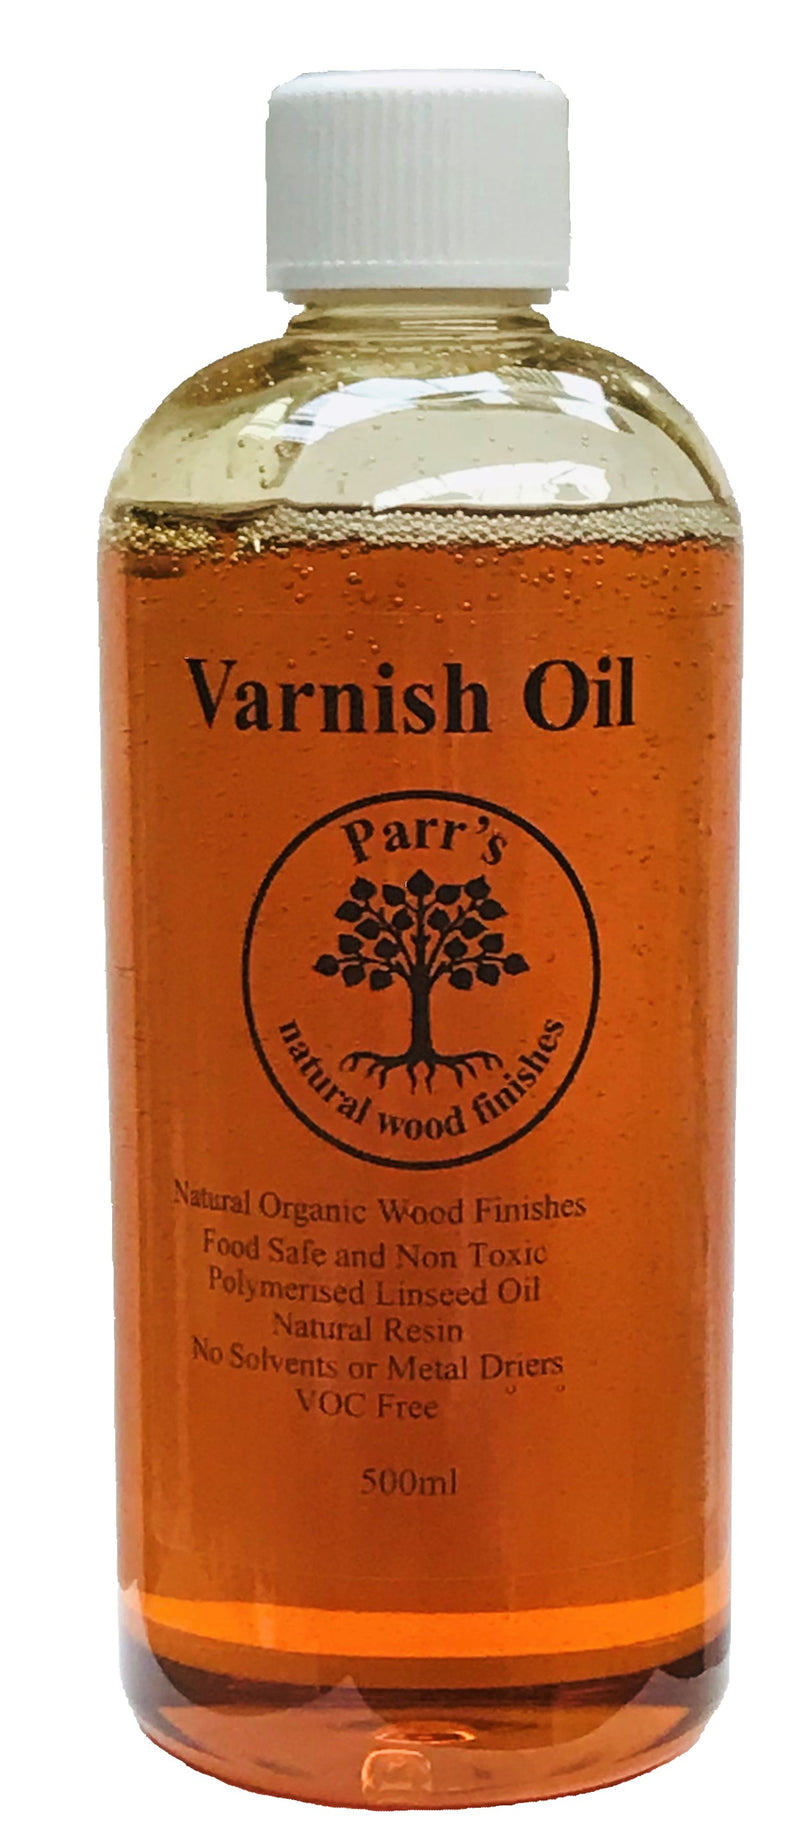 Varnish Oil